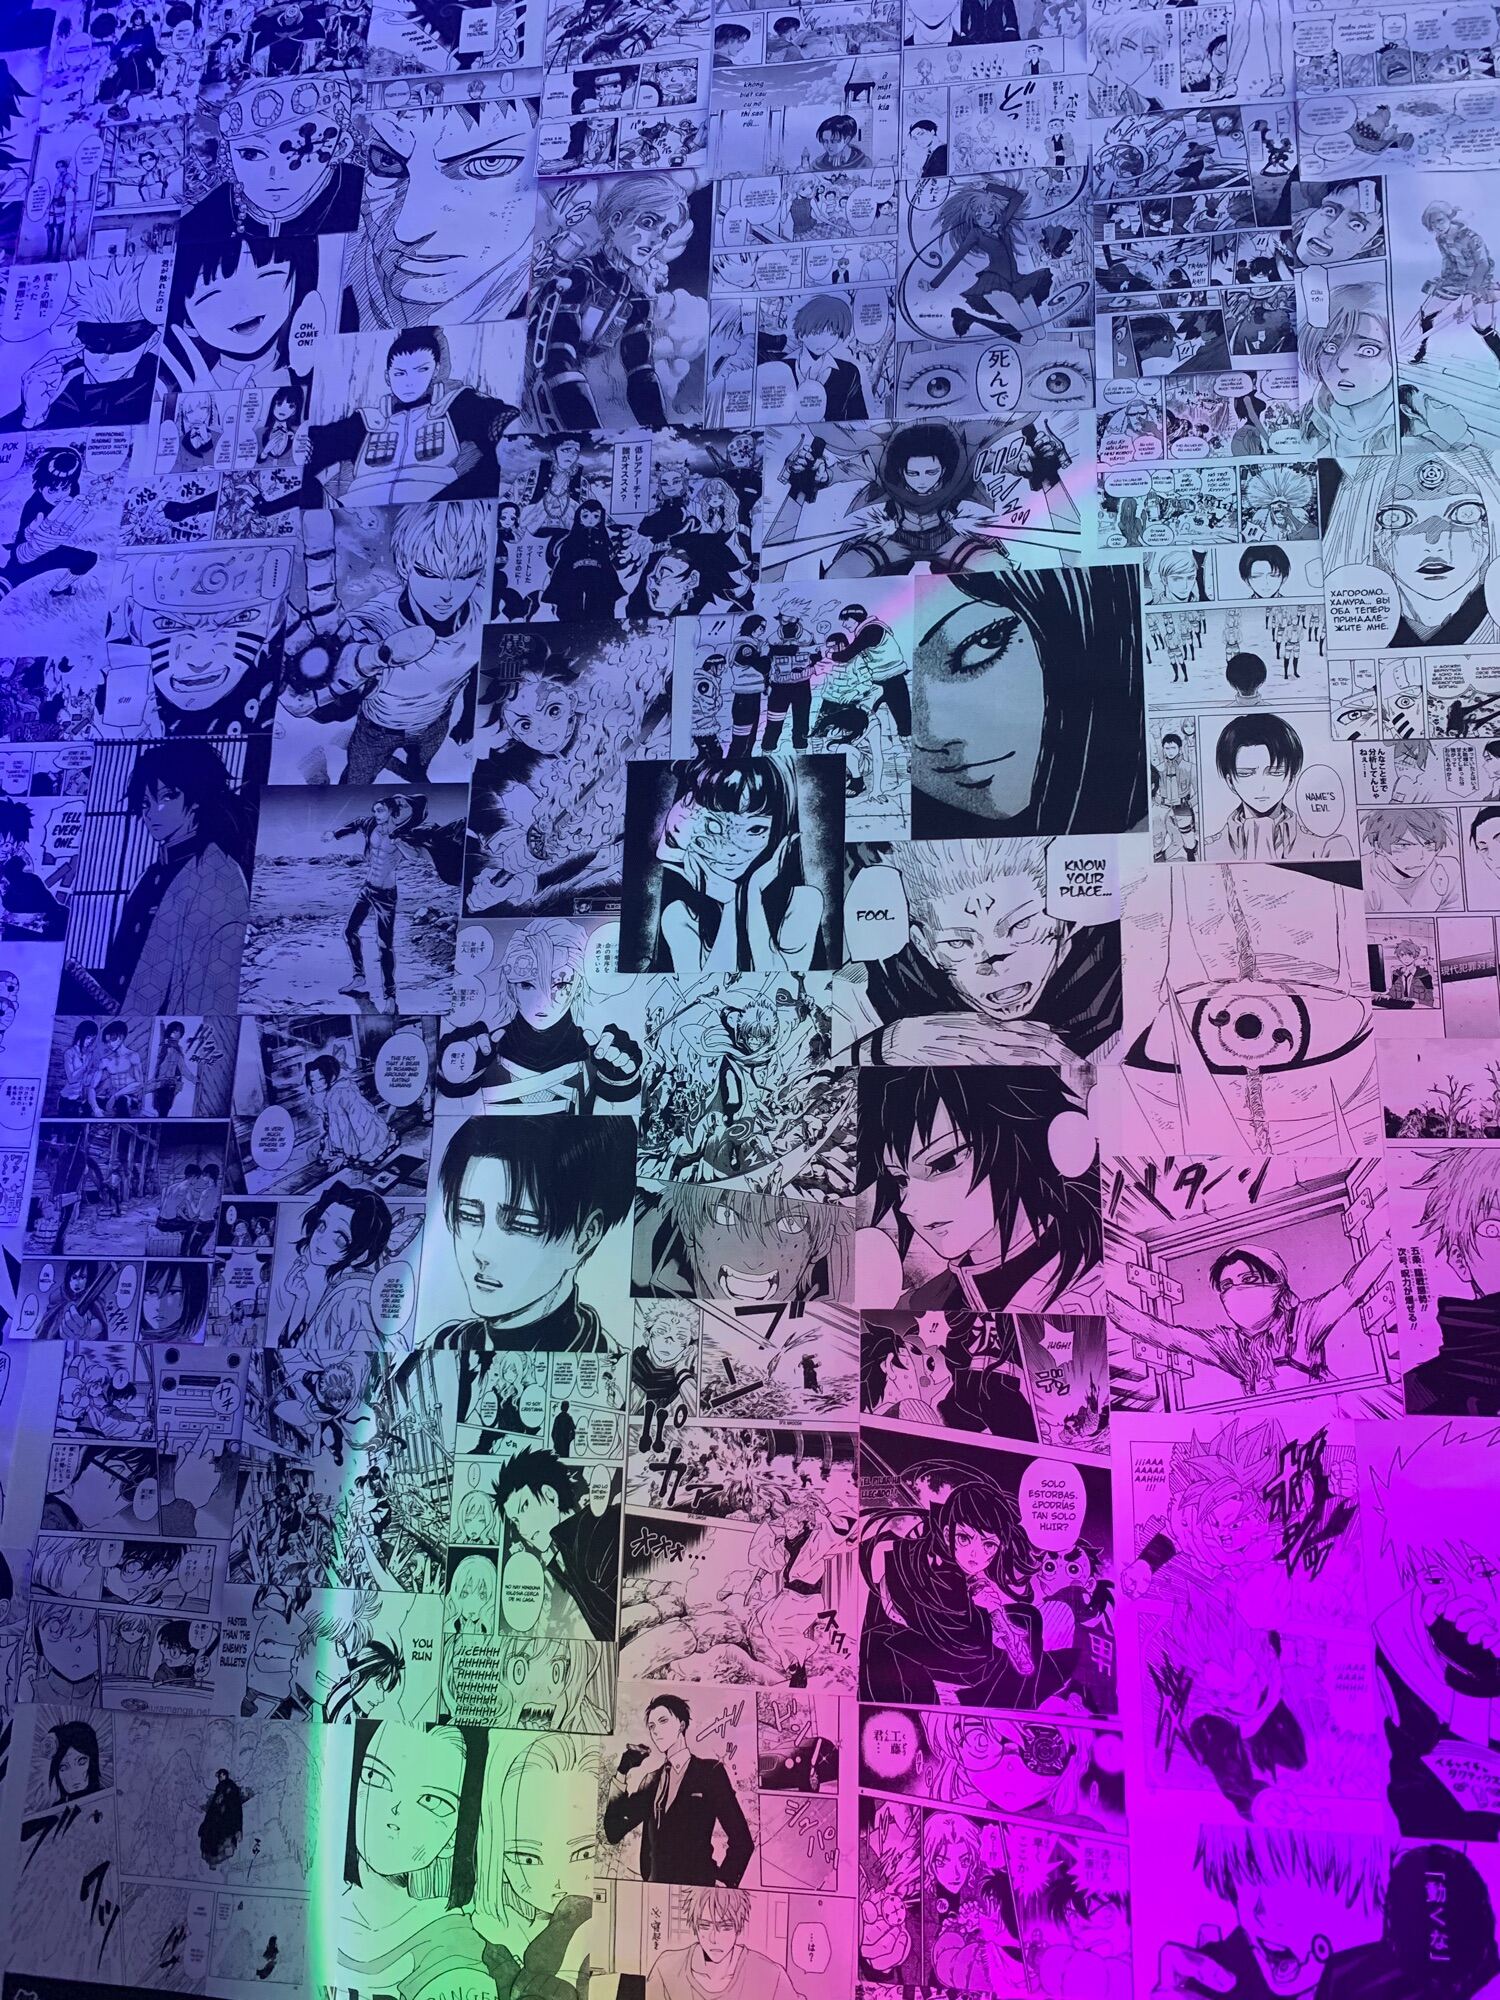 Chào mừng đến với năm 2024, đã đến lúc cải tổ phòng ngủ của bạn với giấy dán tường phòng ngủ anime tuyệt đẹp! Với những bức tranh đầy màu sắc và in hình chân thực, bạn sẽ cảm thấy như đang sống trong một thế giới hoàn toàn mới. Dù bạn là fan Anime hay không, giấy dán tường này sẽ khiến bạn thích thú đến mức muốn ngồi và xem nó suốt cả ngày.